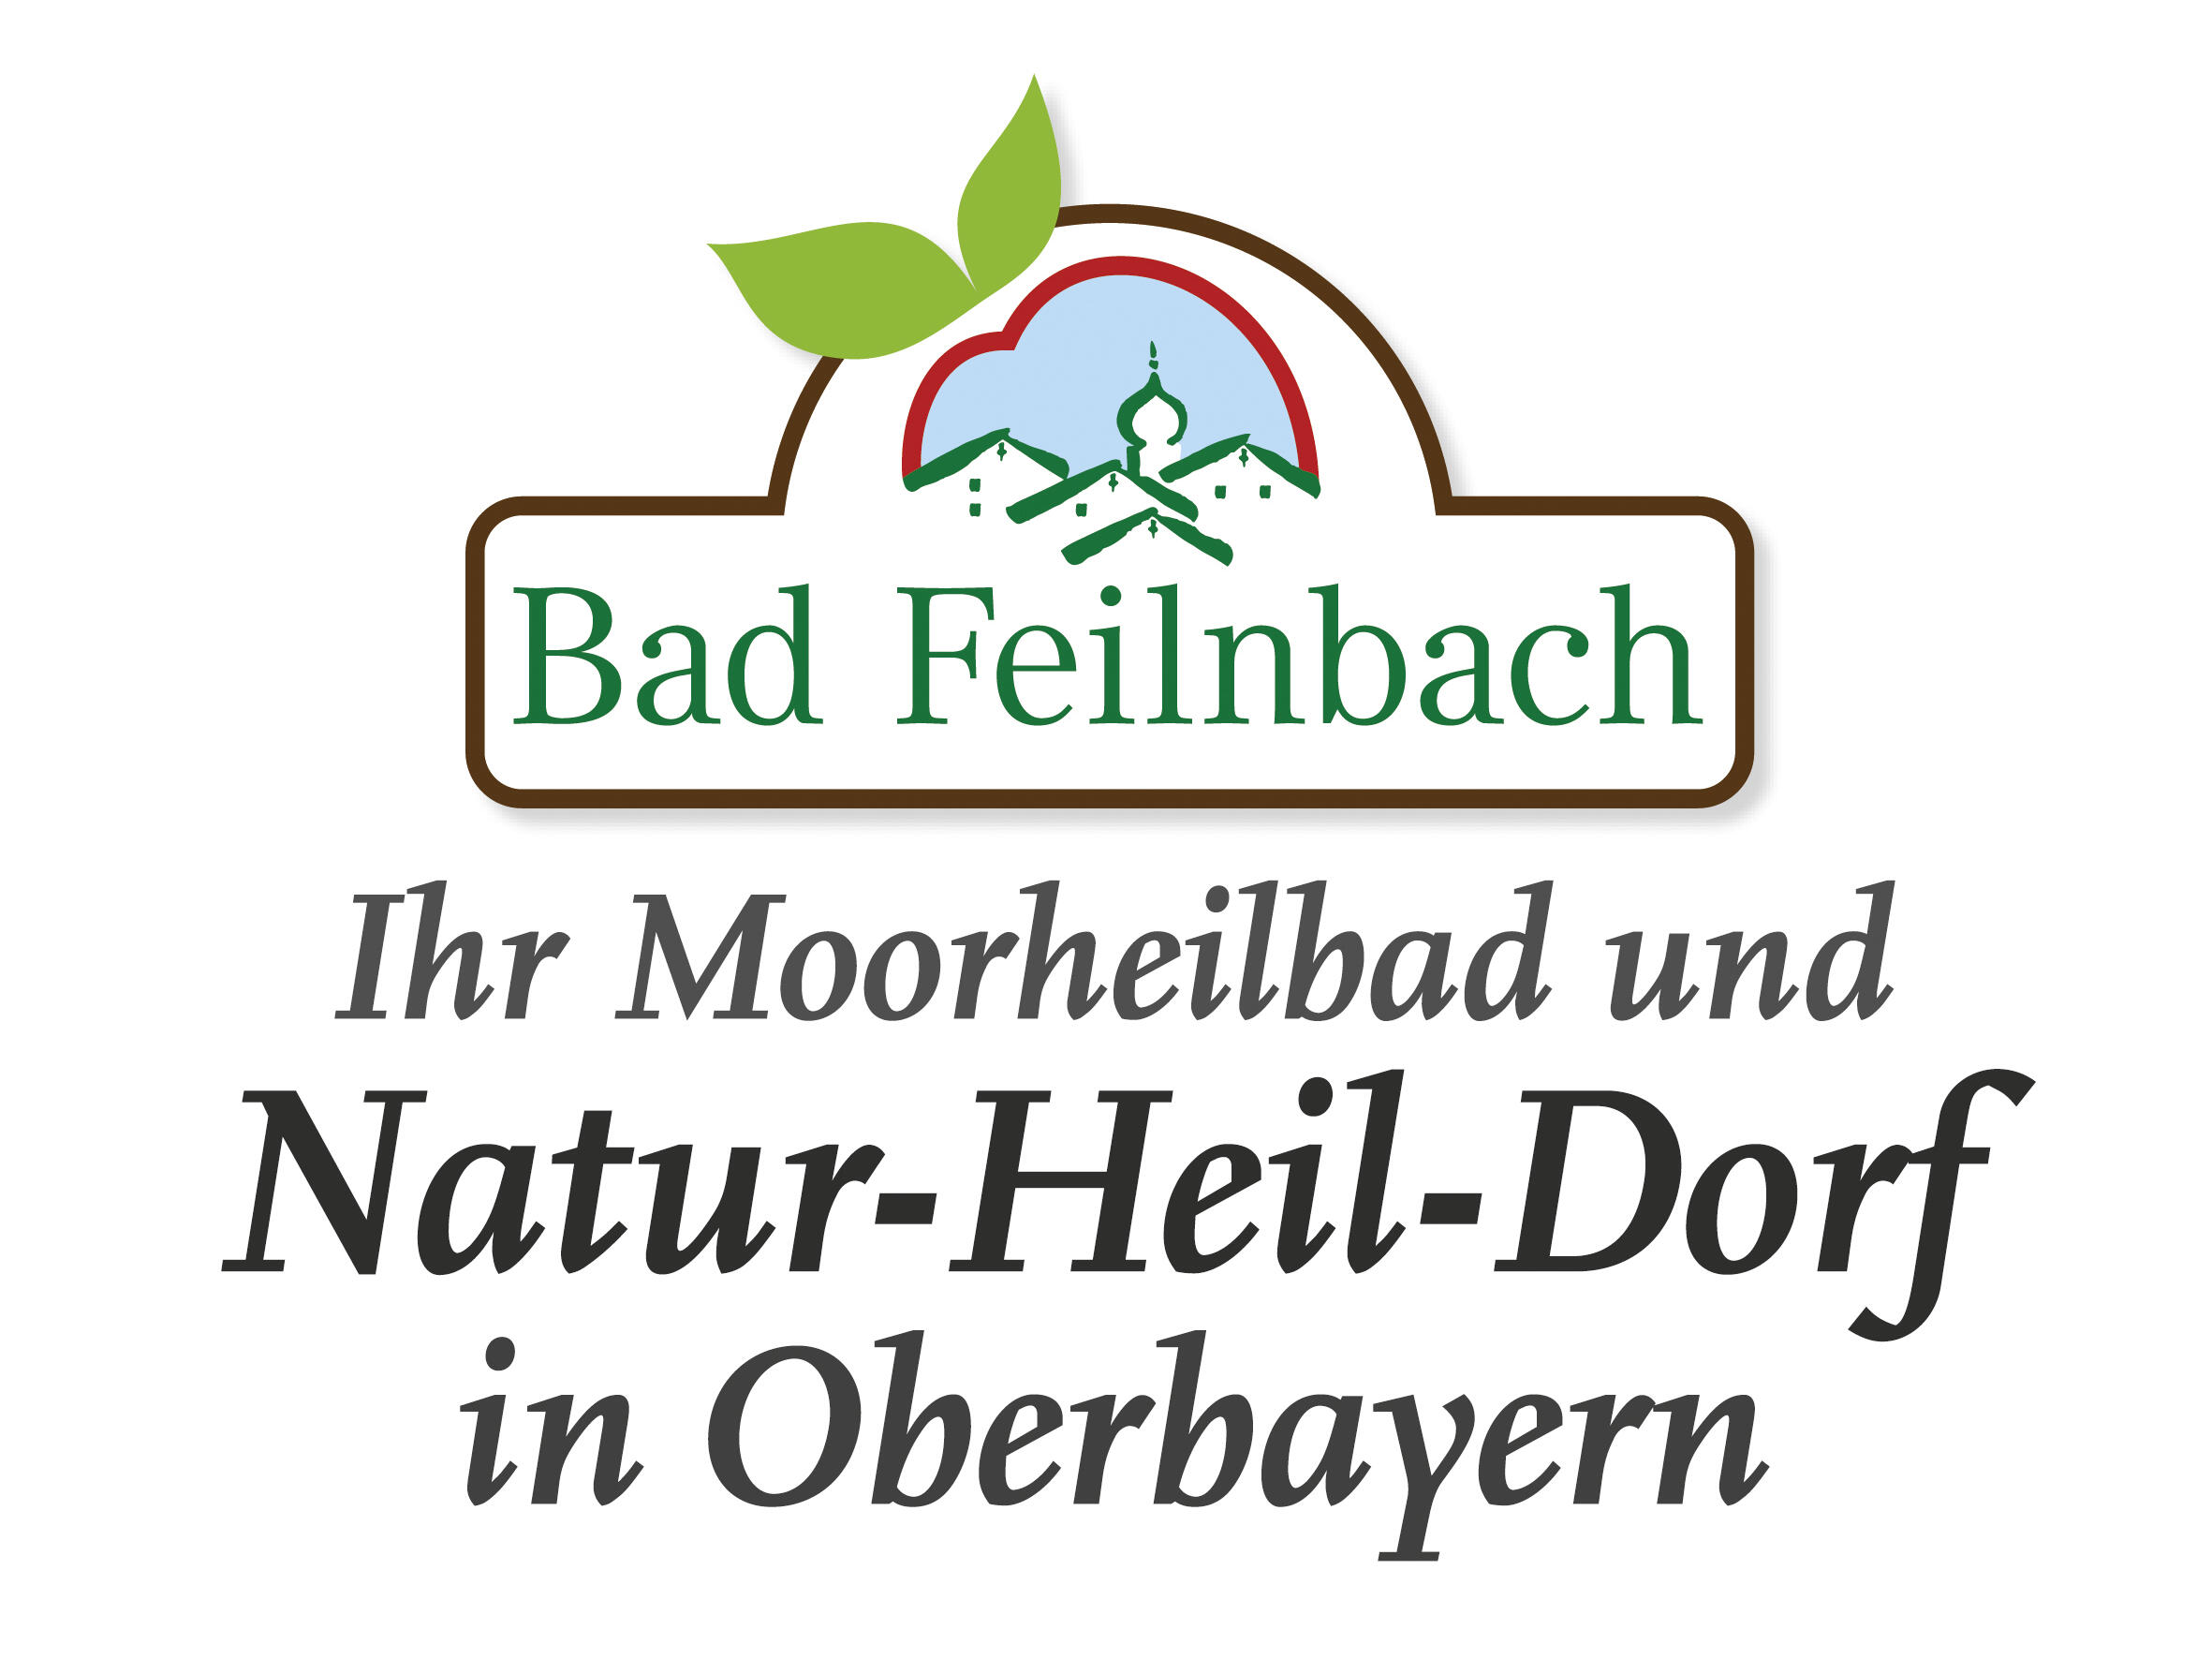 Bad Feilnbach - Ihr Moorheilbad und Natur-Heil-Dorf in Oberbayern